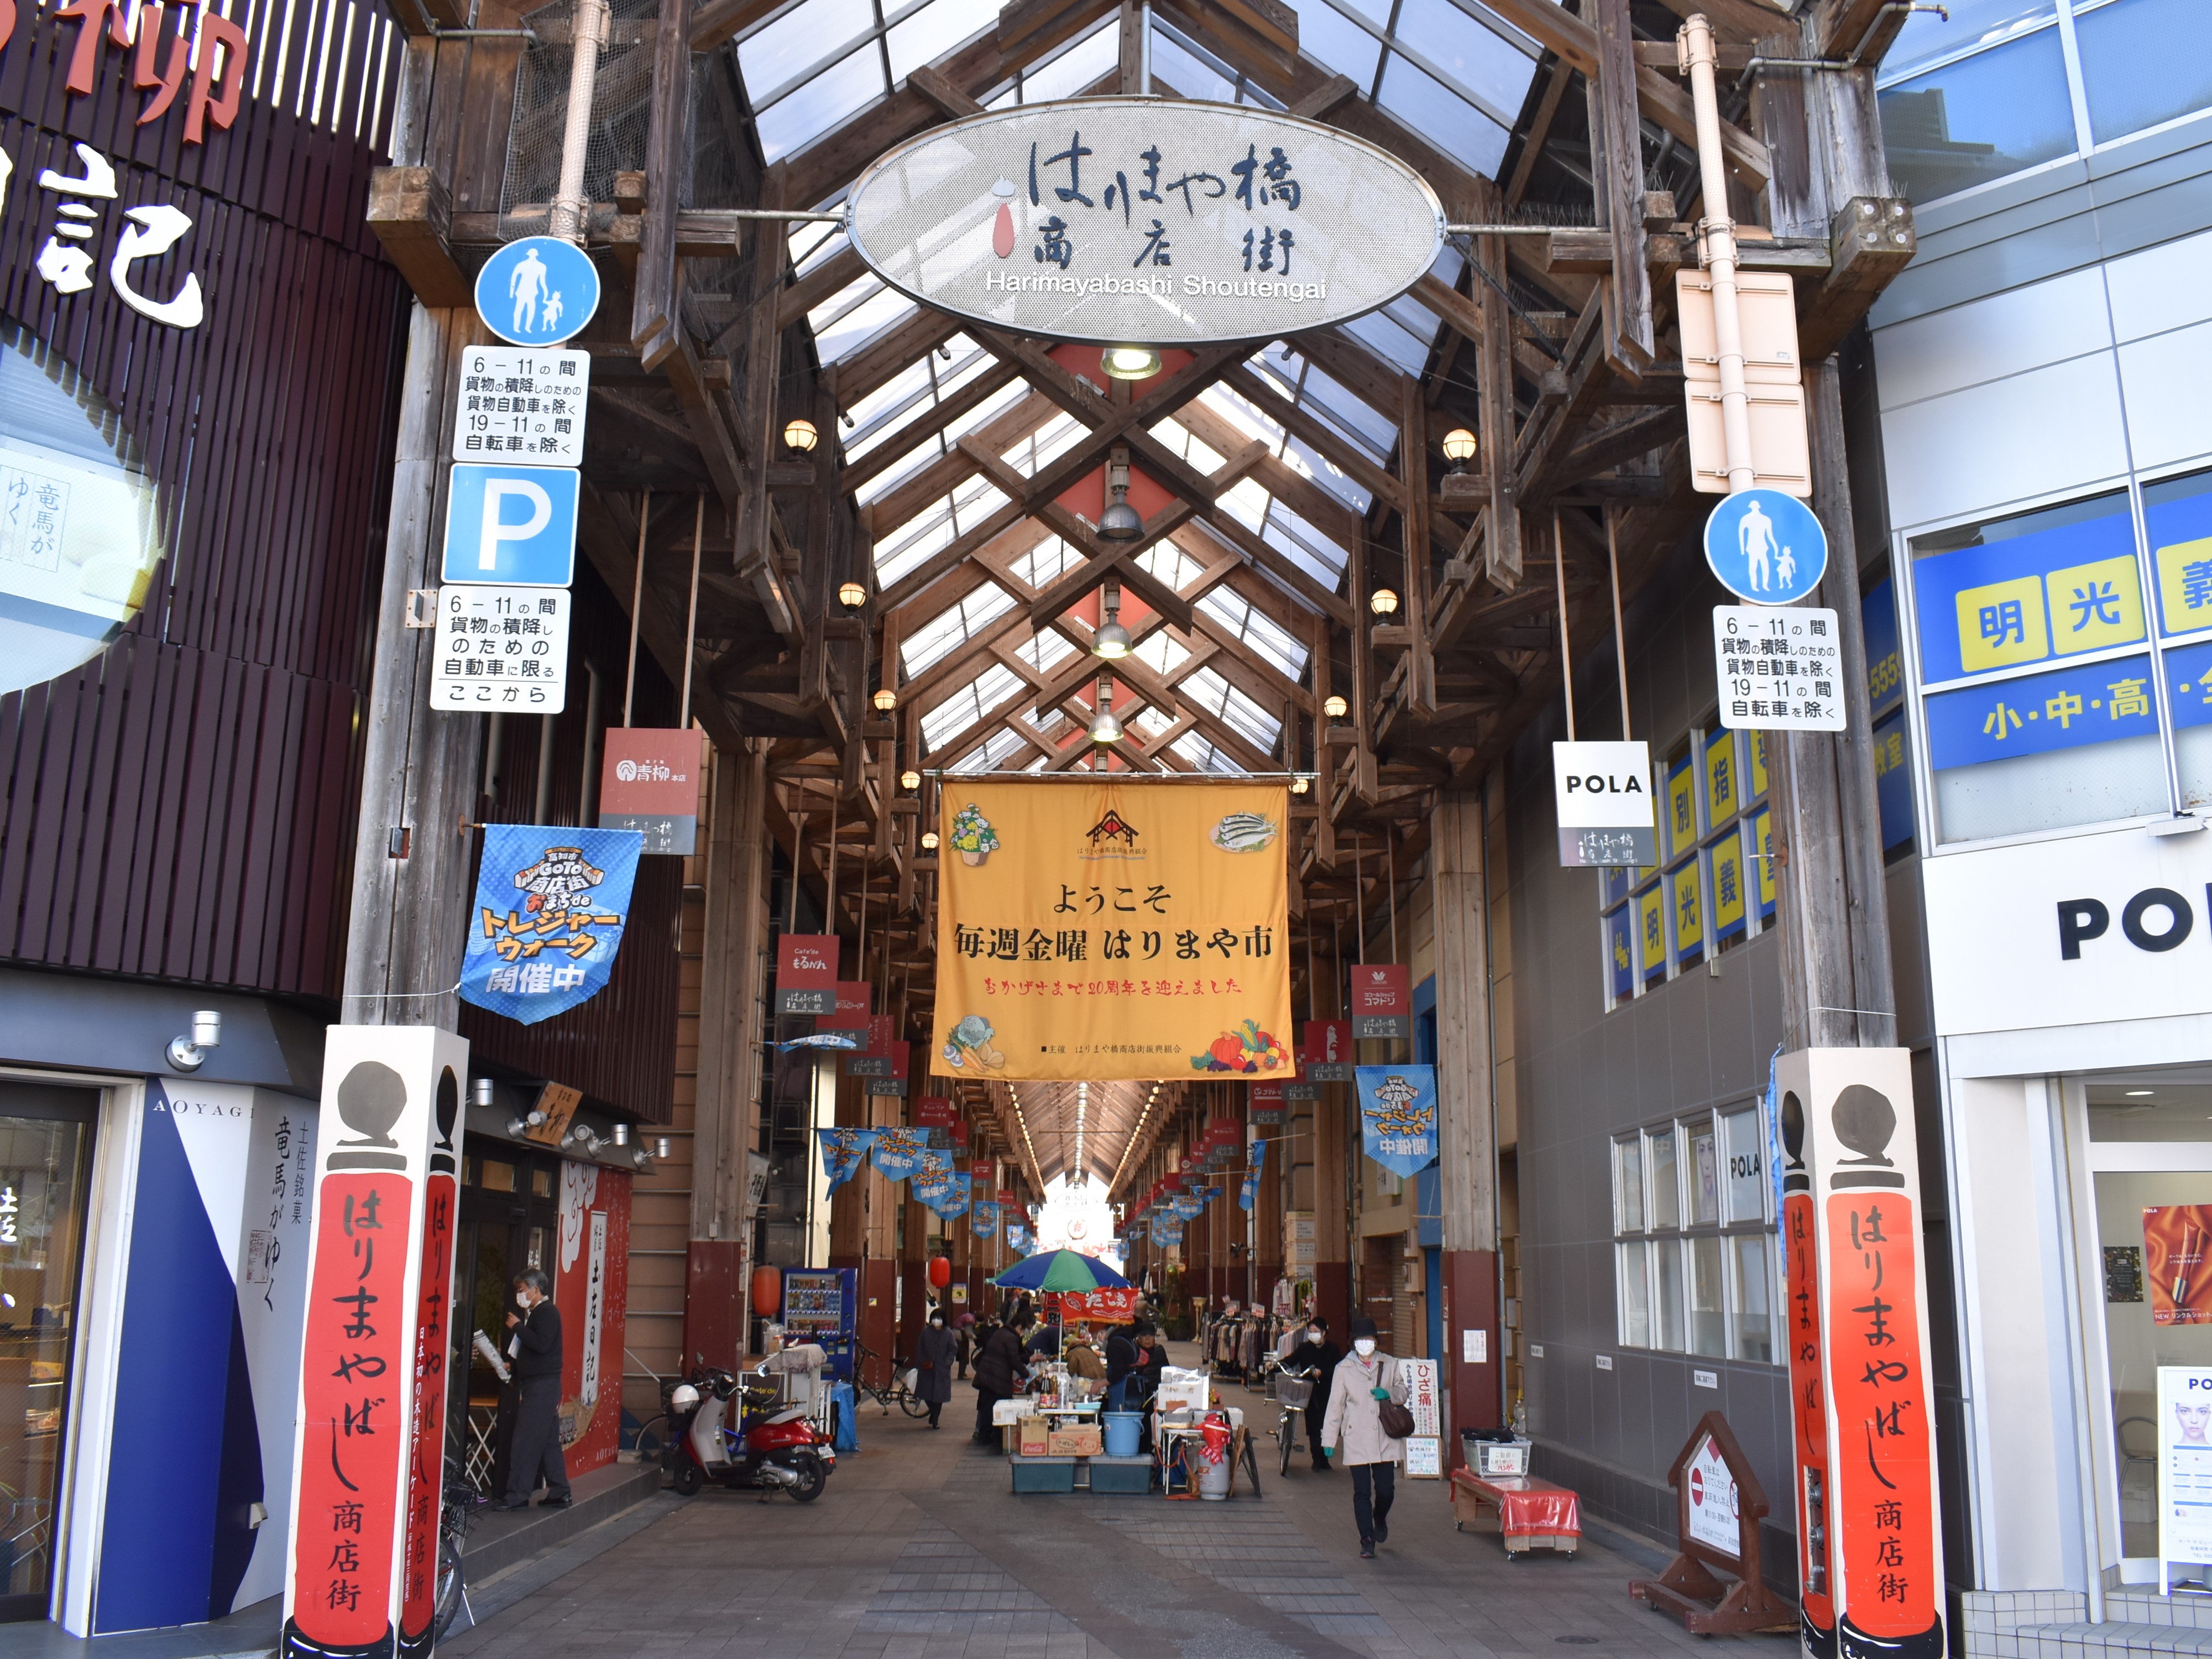 おばちゃんのおしゃべりが最高 高知県内最古のアーケード はりまや橋商店街 は魅力満載 高知県公式 高知県のあれこれまとめサイト 高知家の